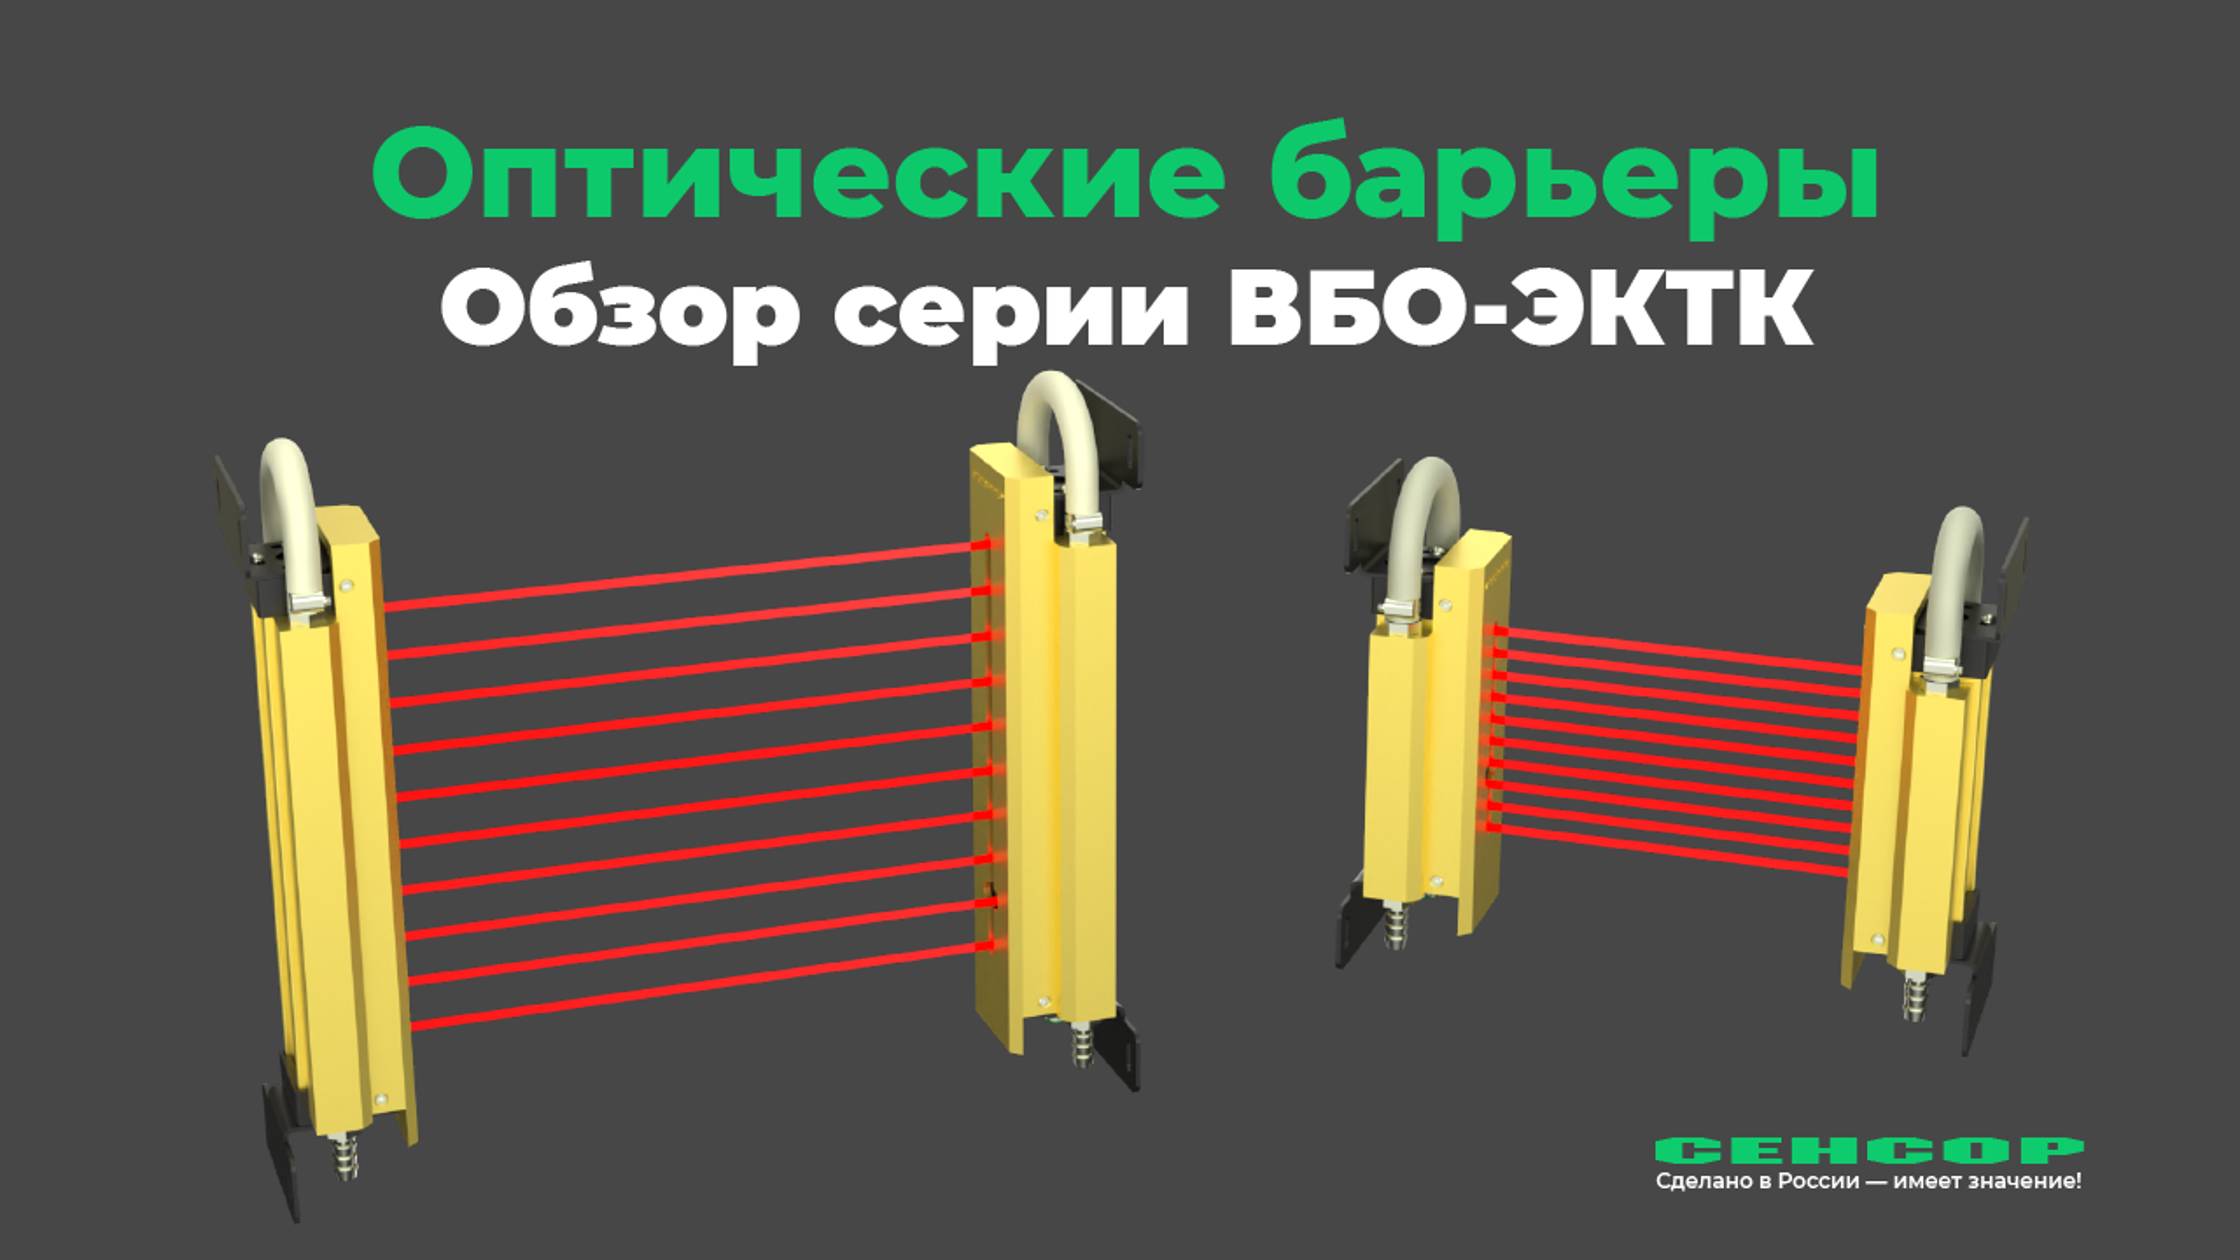 Обзор серии высокотемпературных оптических барьеров ВБО-ЭКТК от производителя СЕНСОР